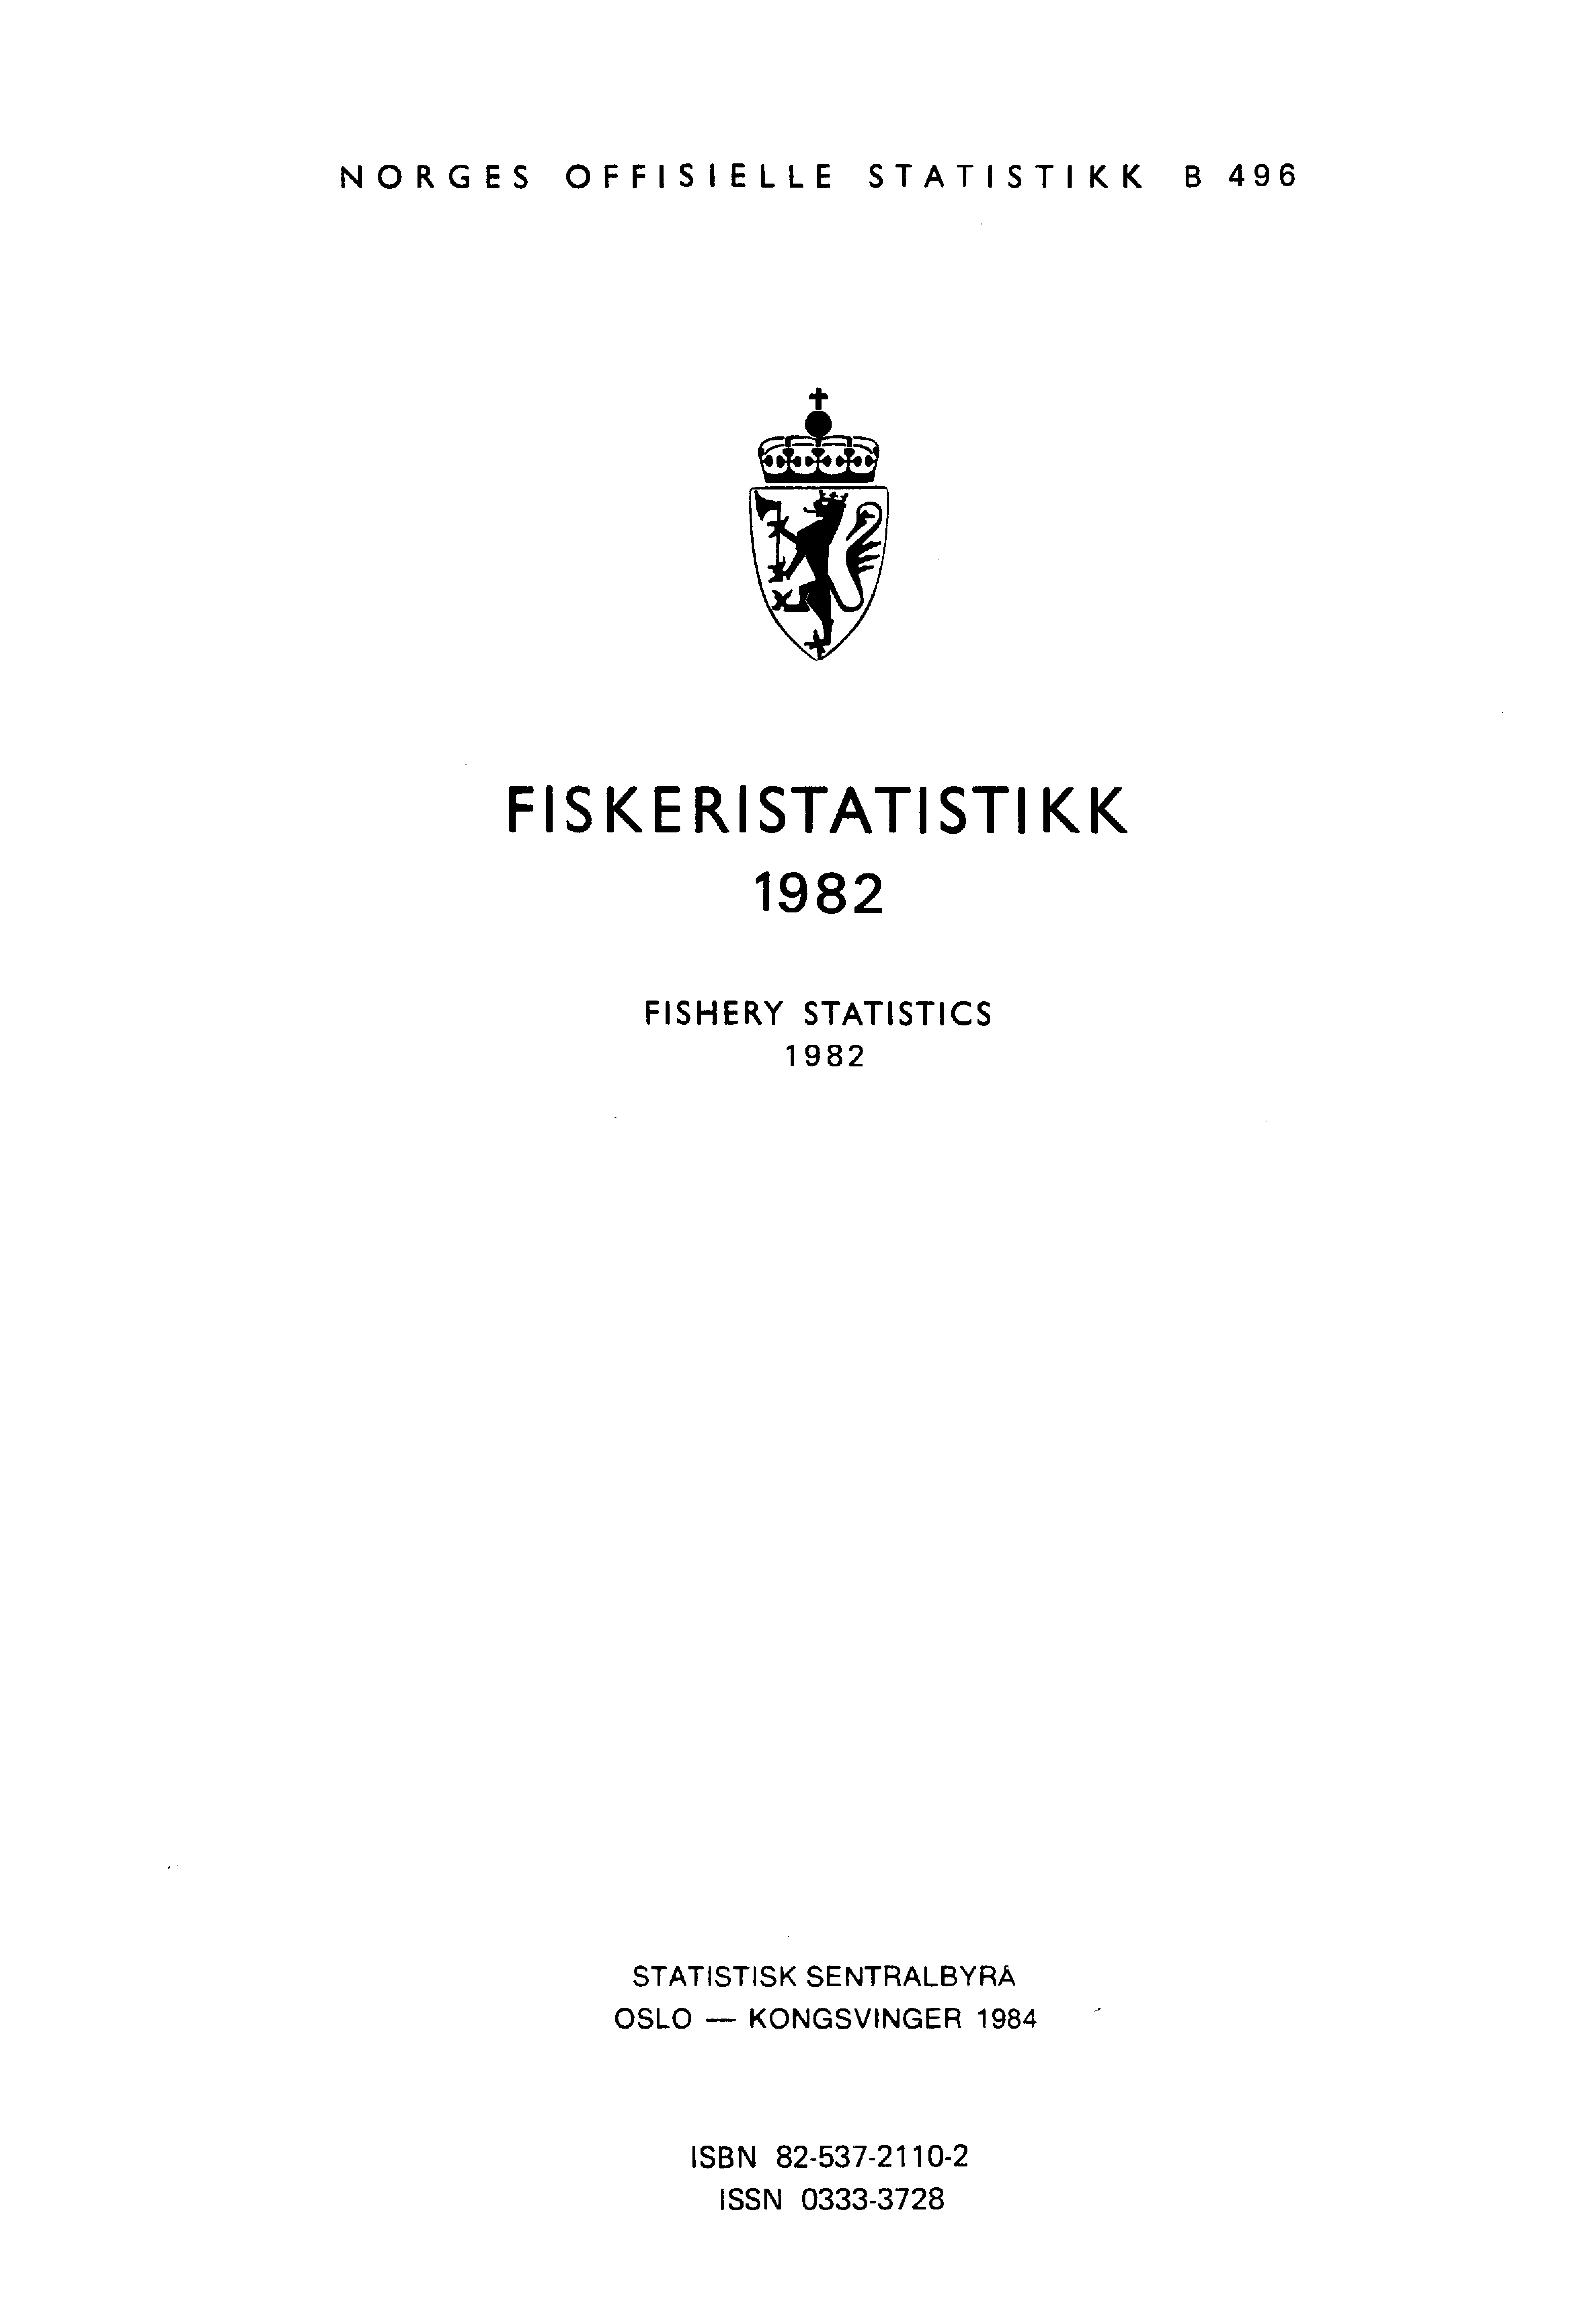 NORGES OFFISIELLE STATISTIKK B 496 FISKERISTATISTIKK 1982 FISHERY STATISTICS